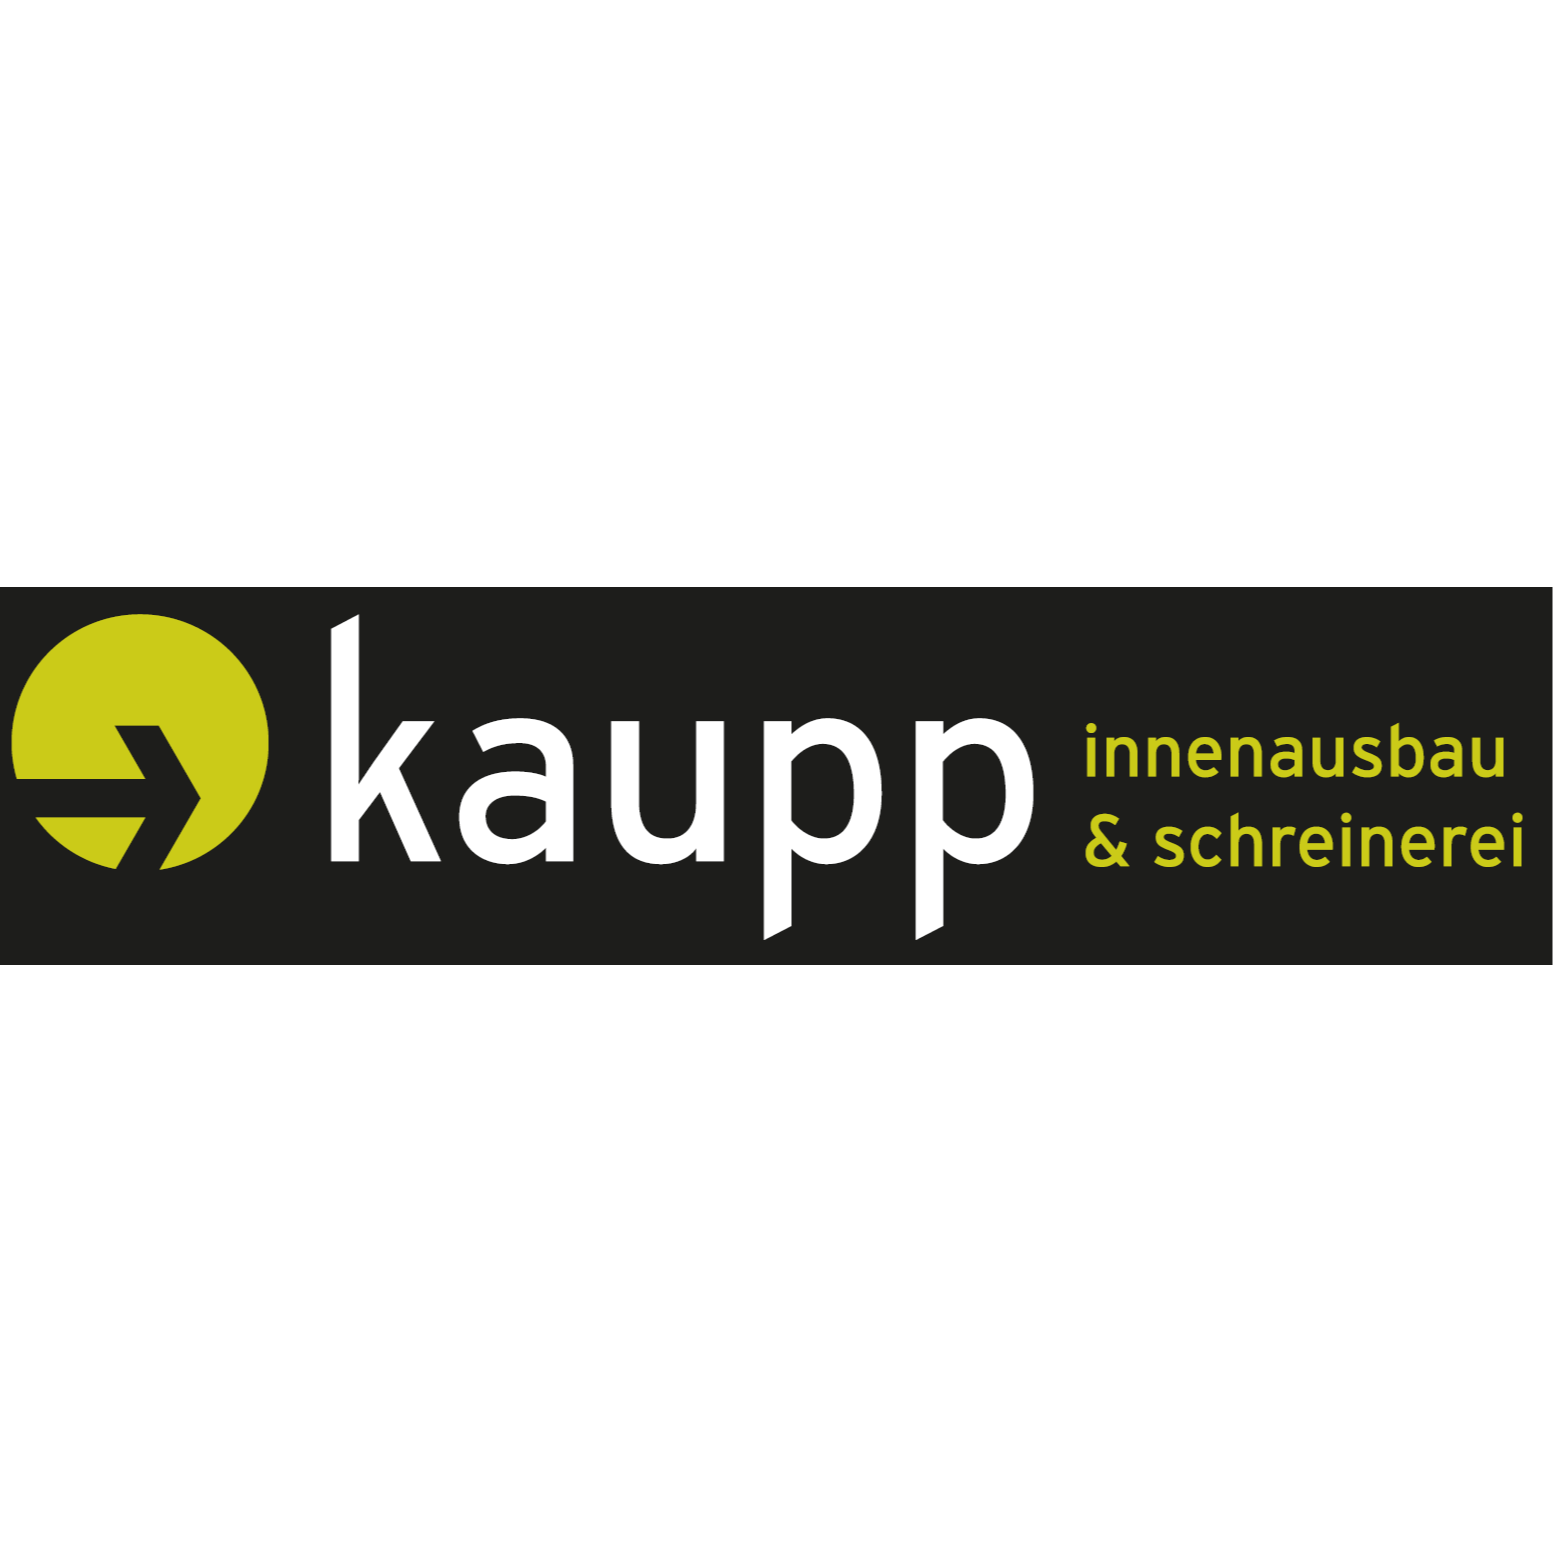 Michael Kaupp Innenausbau & Schreinerei Logo